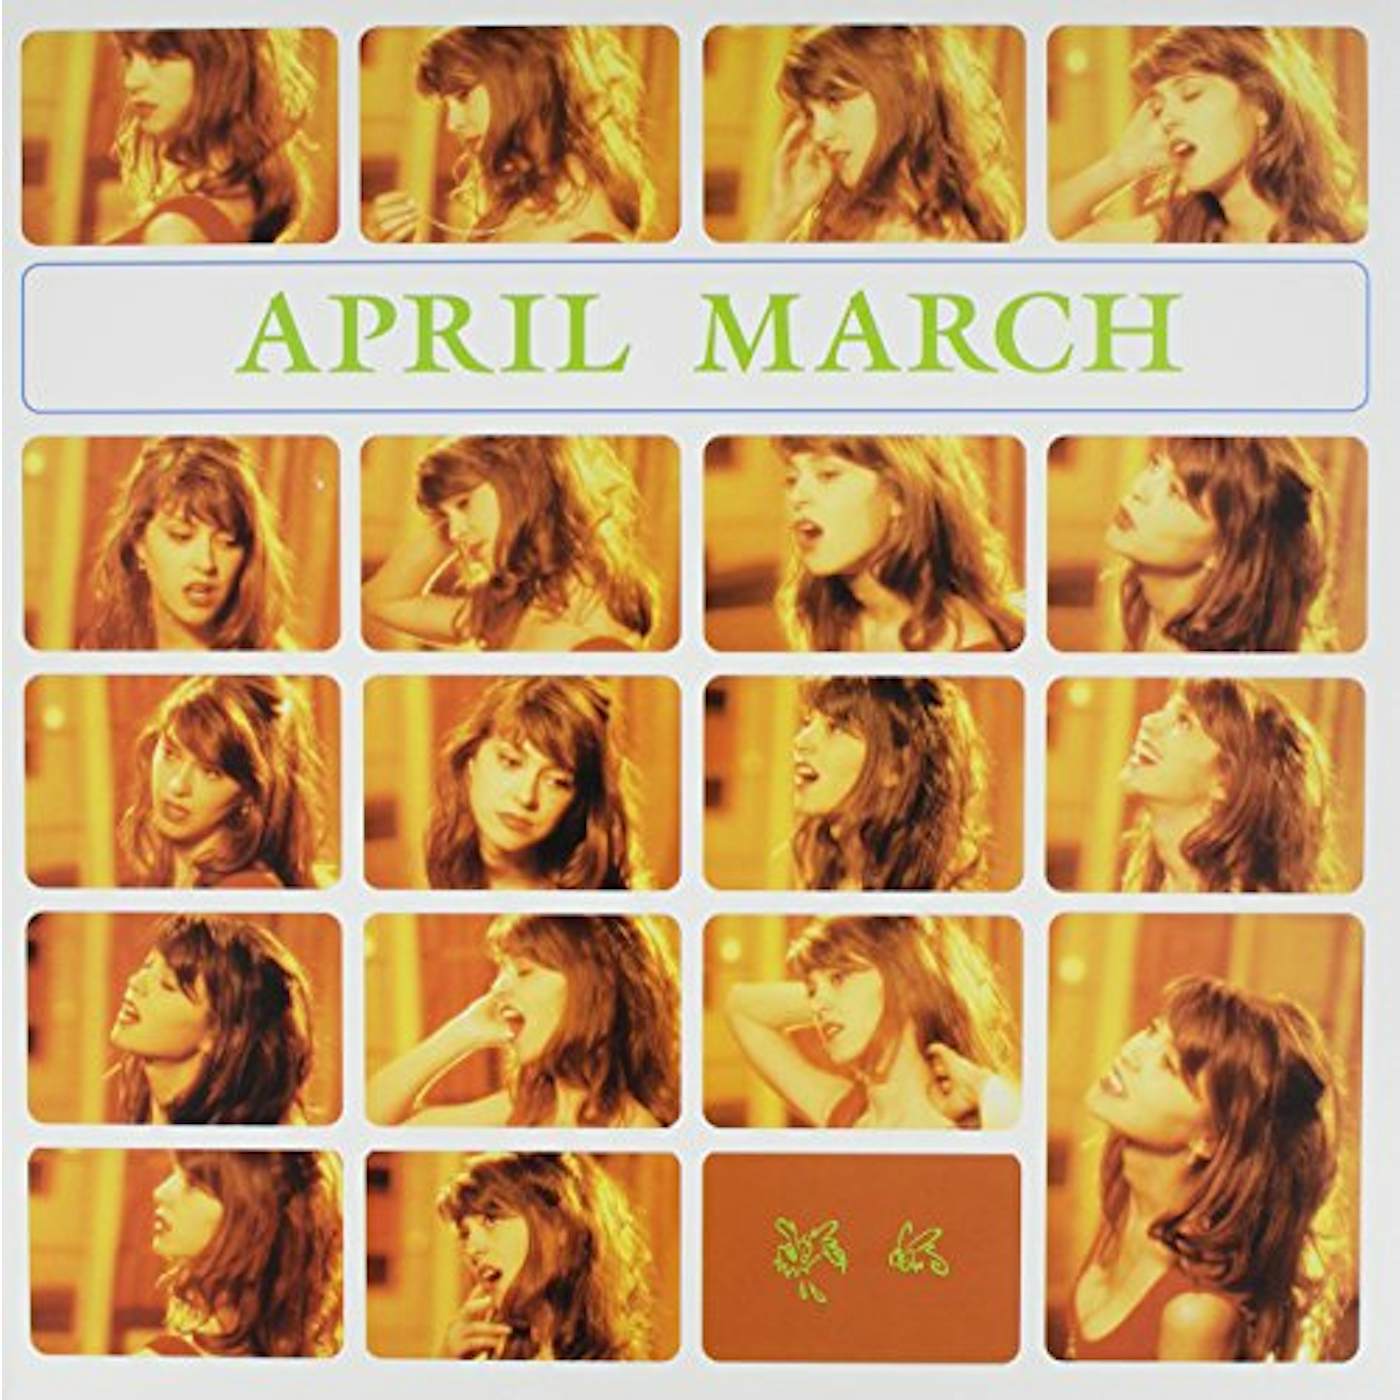 April March Paris in April Vinyl Record